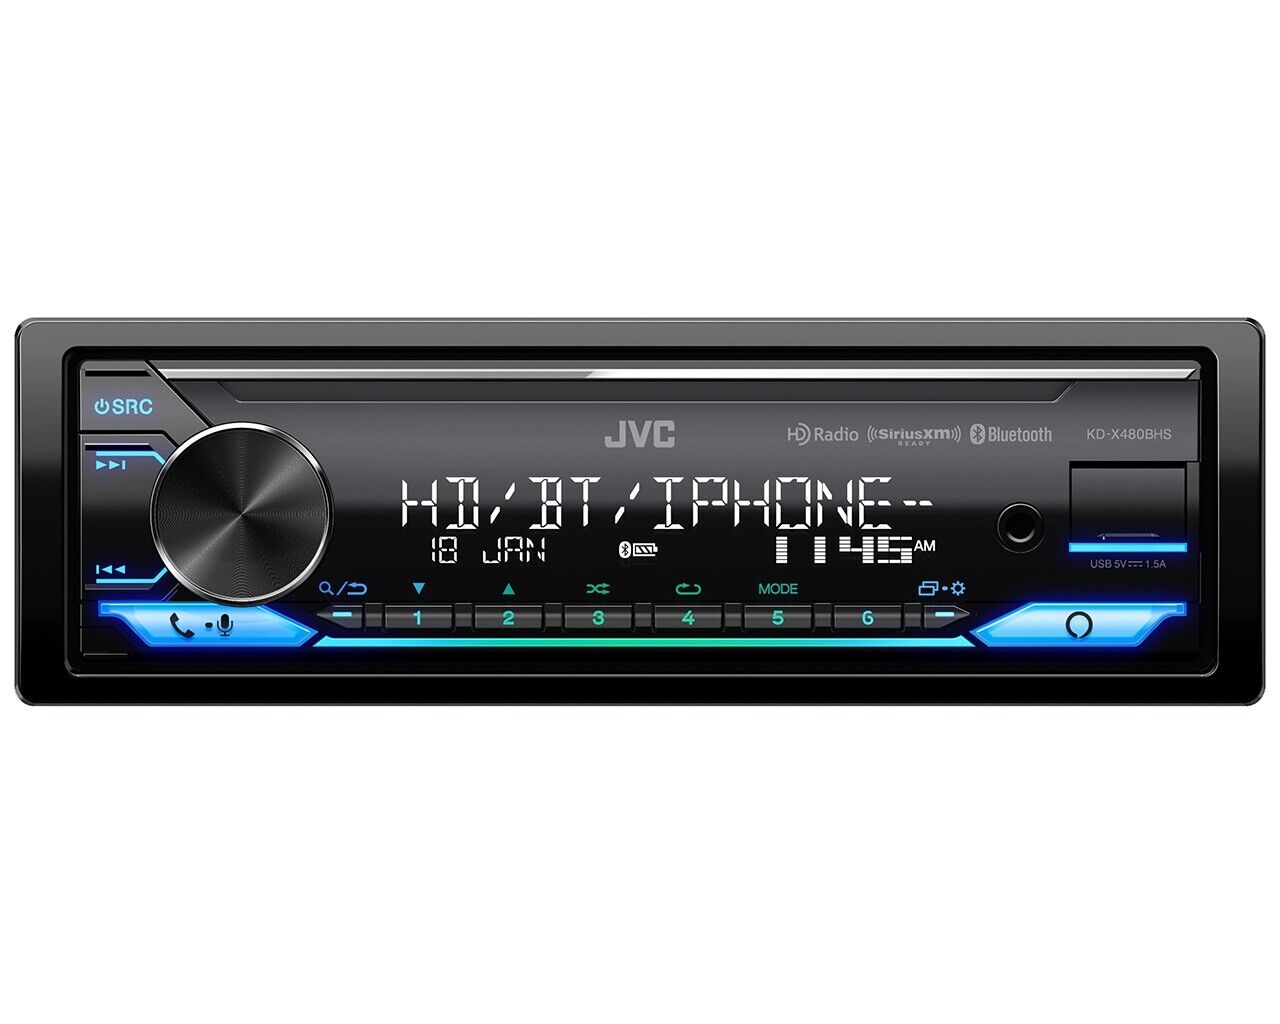 JVC KD-X480BHS Digital Media Receiver featuring Bluetooth USB HD Radio SiriusXM Amazon Alexa 13-Band EQ